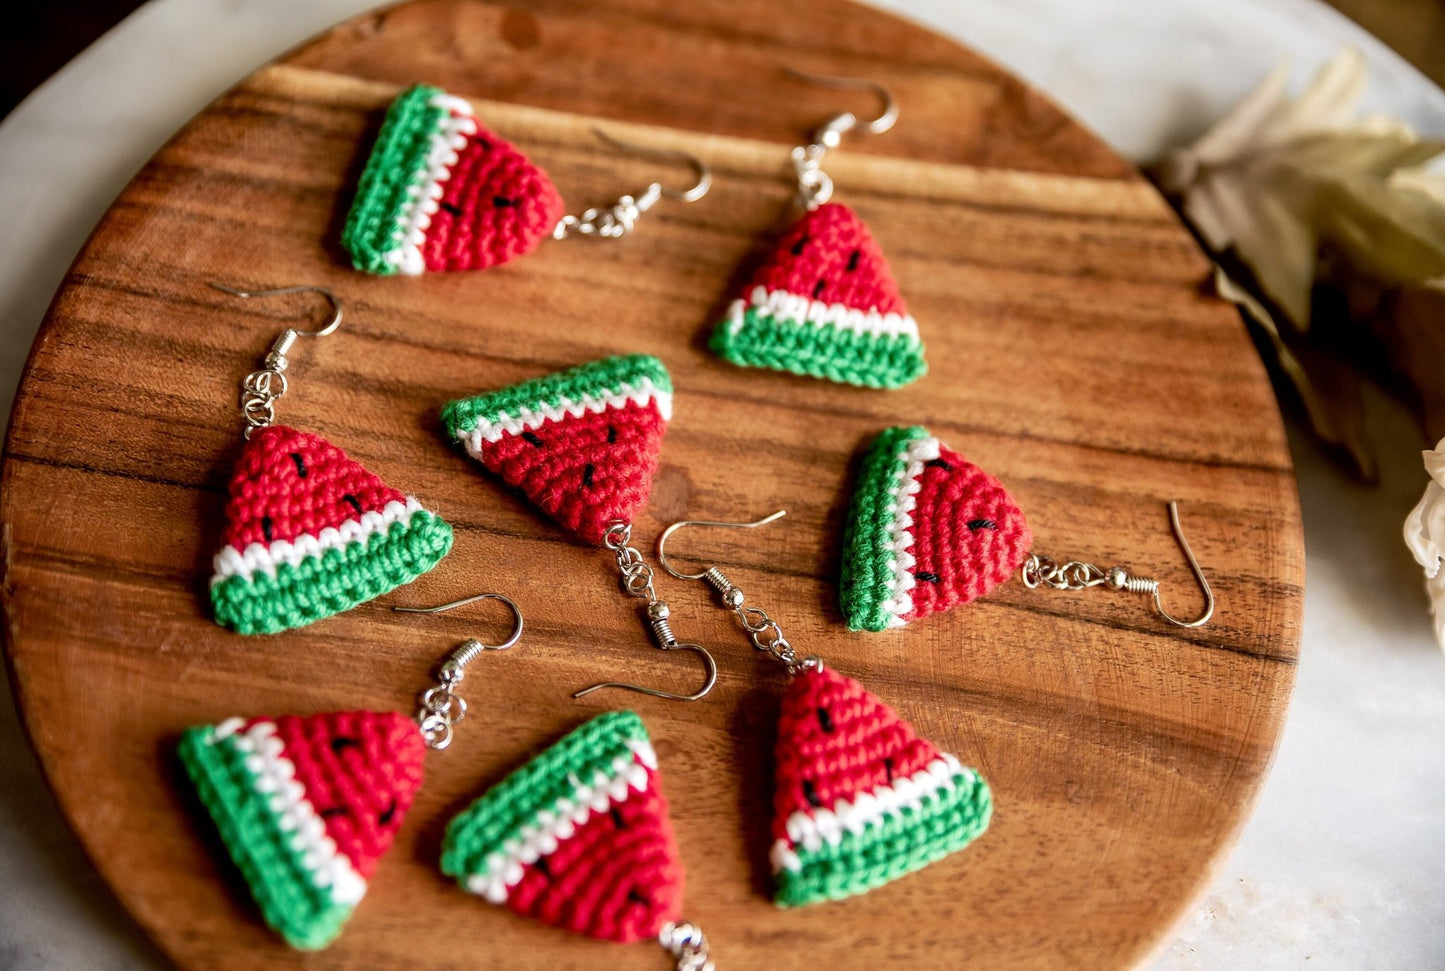 Watermelon Earrings Watermelon Slice Earrings Crochet Earrings Crochet Melon Earrings Cute Fruit Earrings Boho Jewelry Fun Fruit Jewelry - Hemsin Atelier